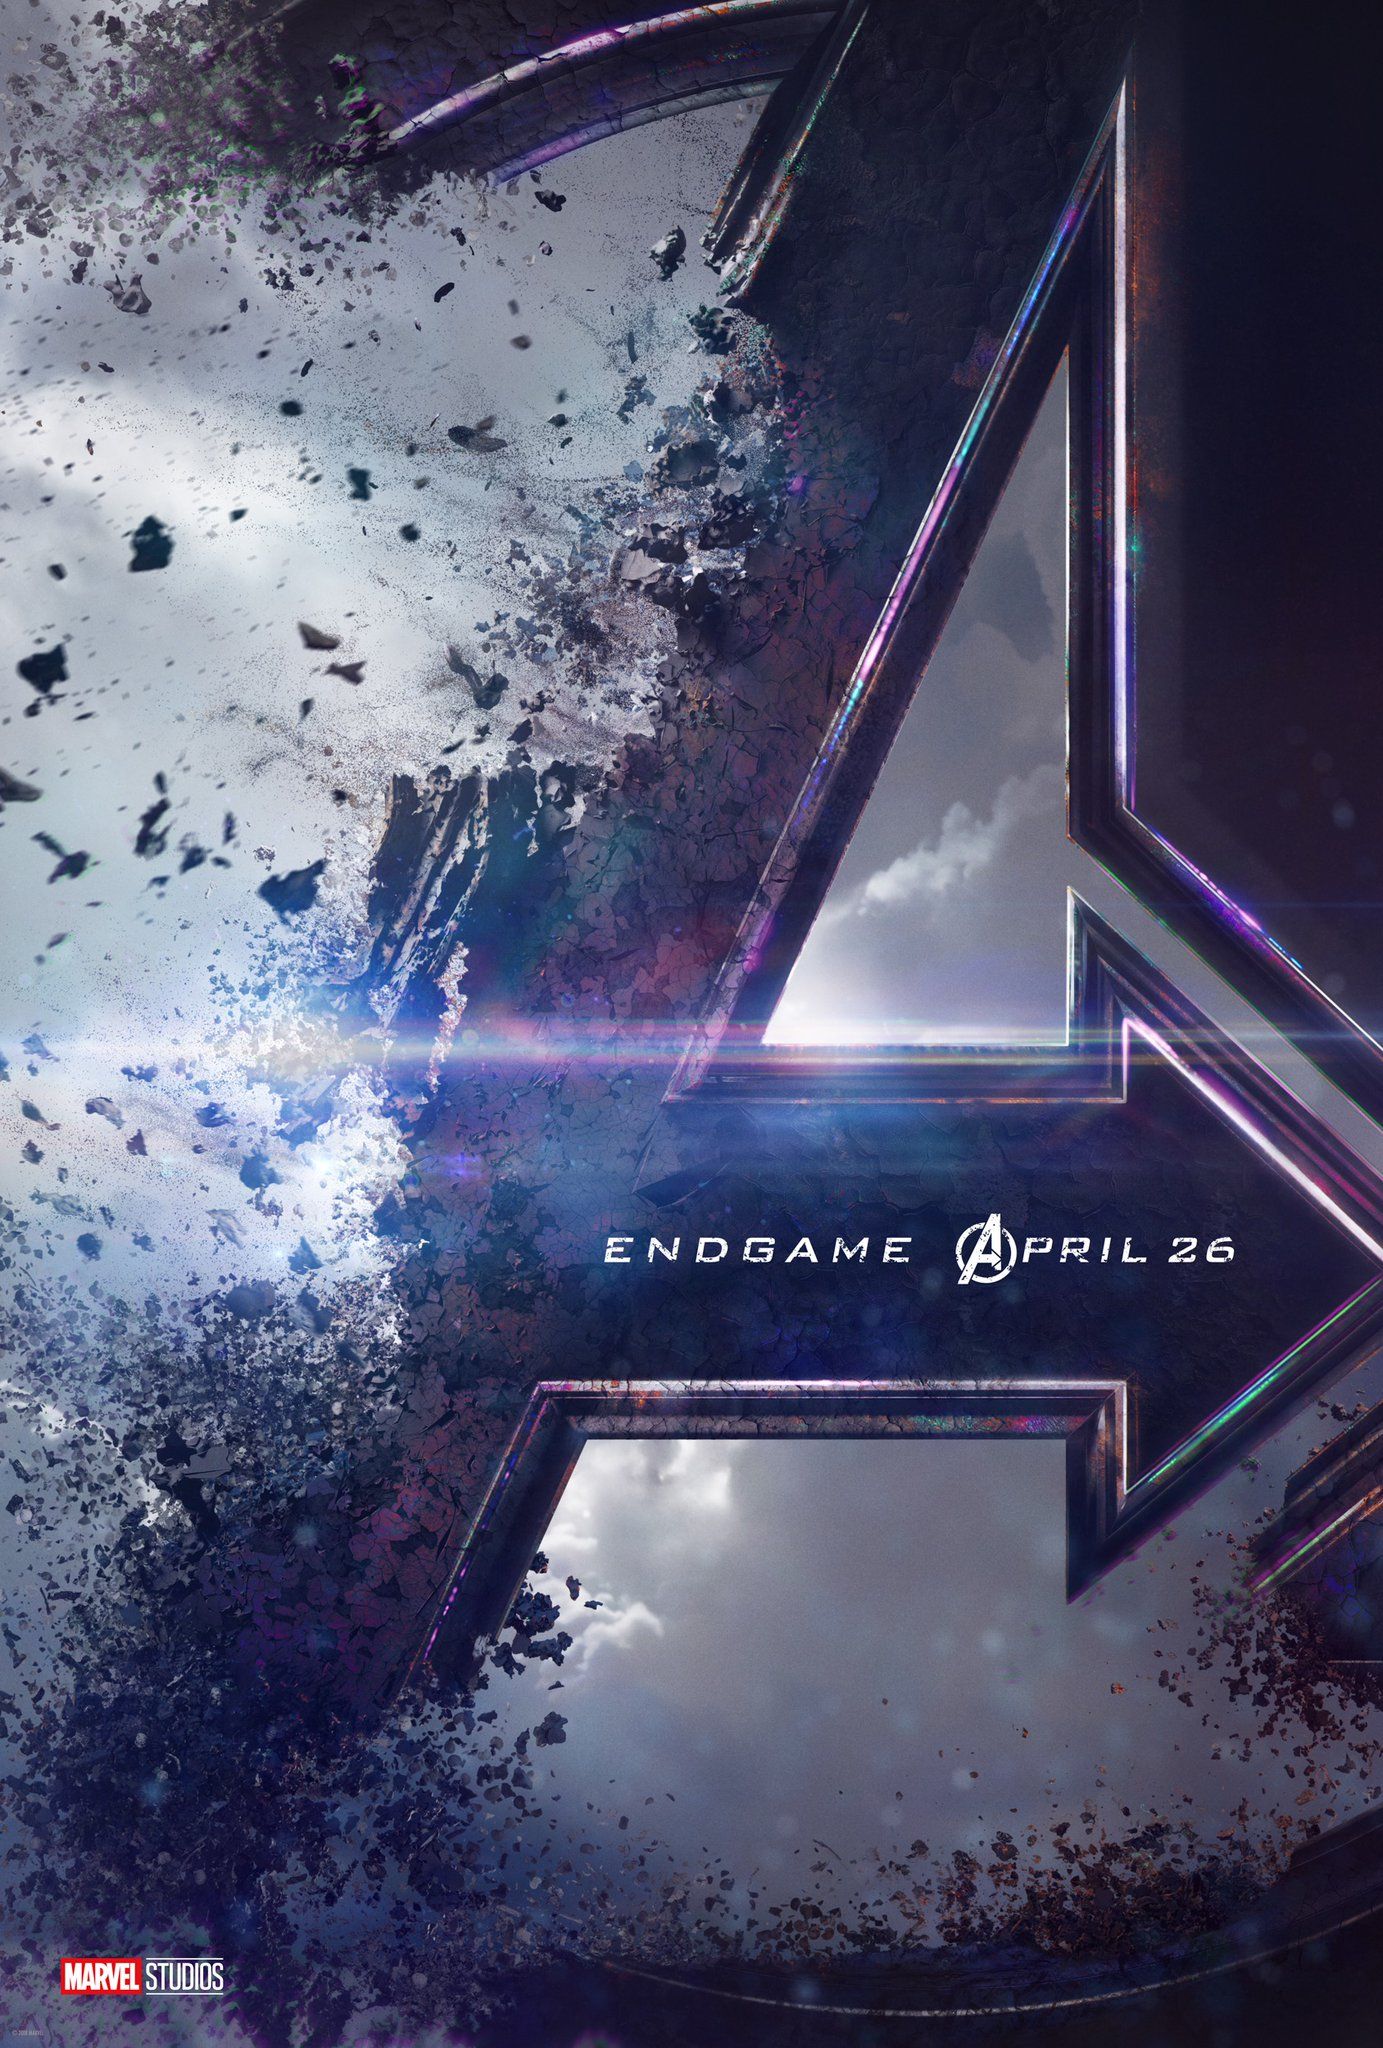 Avengers 4 teaser poster